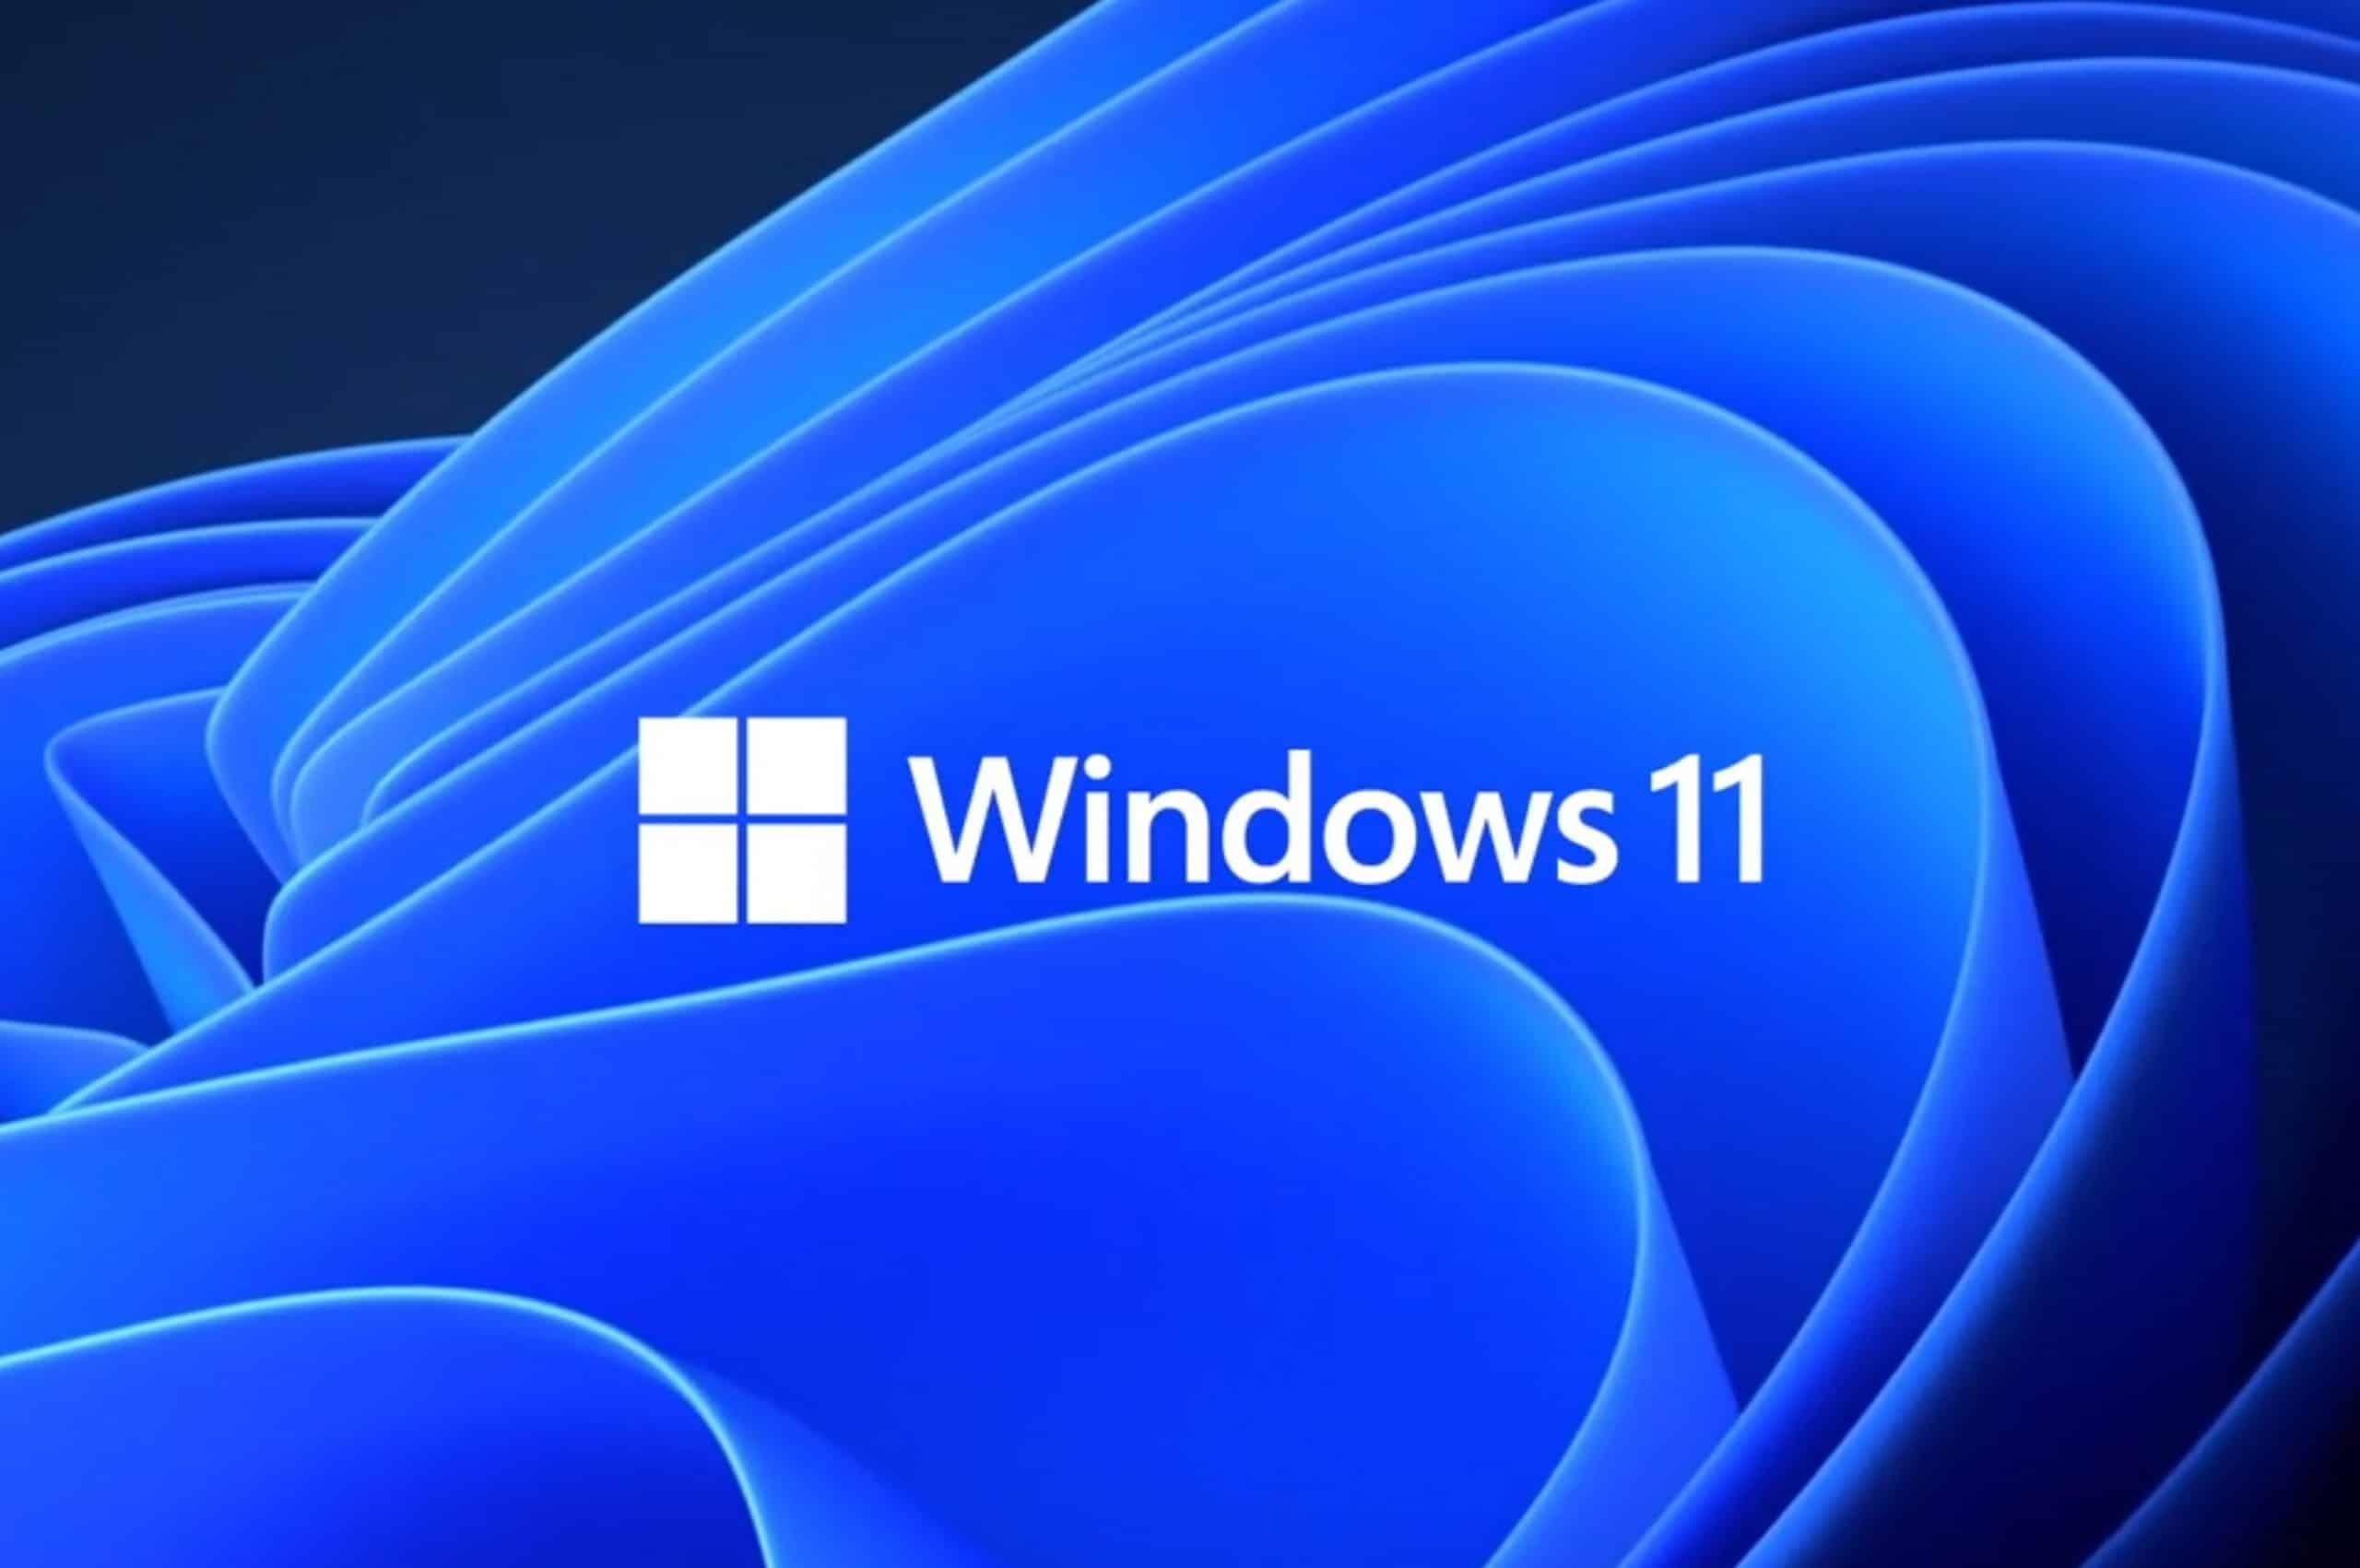 Les paramètres de Windows 11 seront bientôt dotés d'un nouvel onglet Accueil, qui contiendra les commandes les plus fréquemment utilisées.